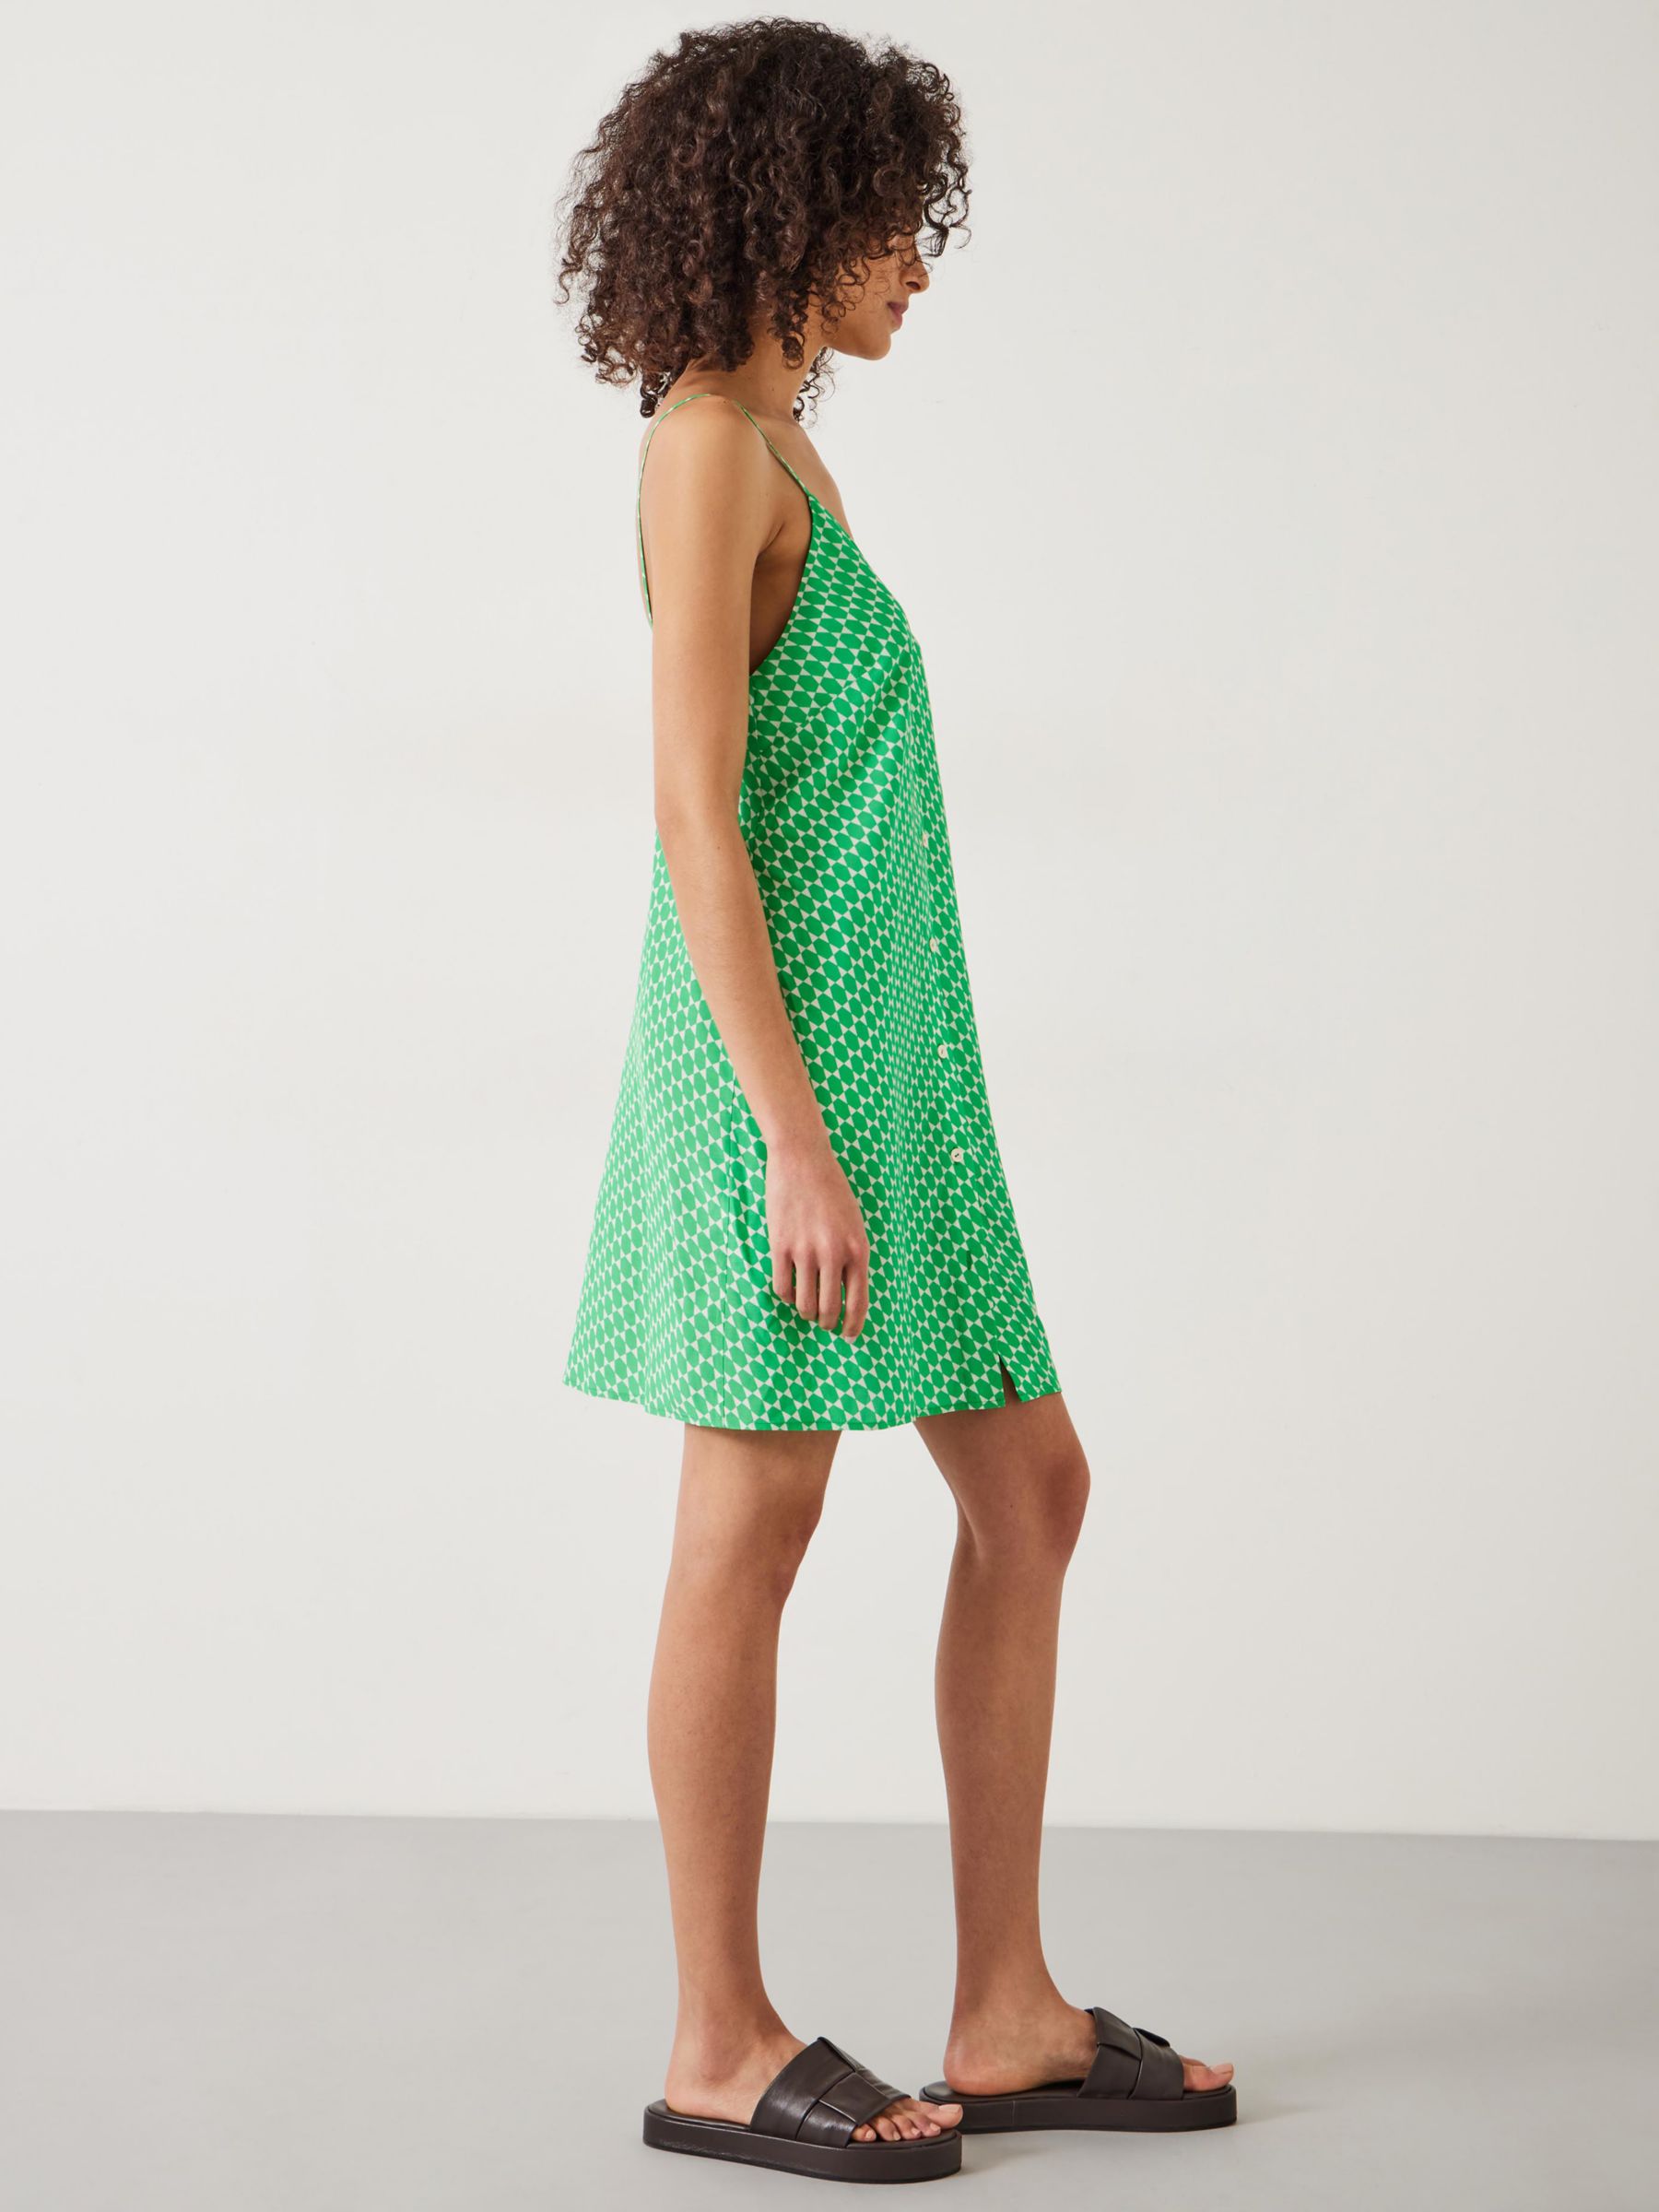 HUSH Madden Cami Mini Dress, Geo Star Green, L